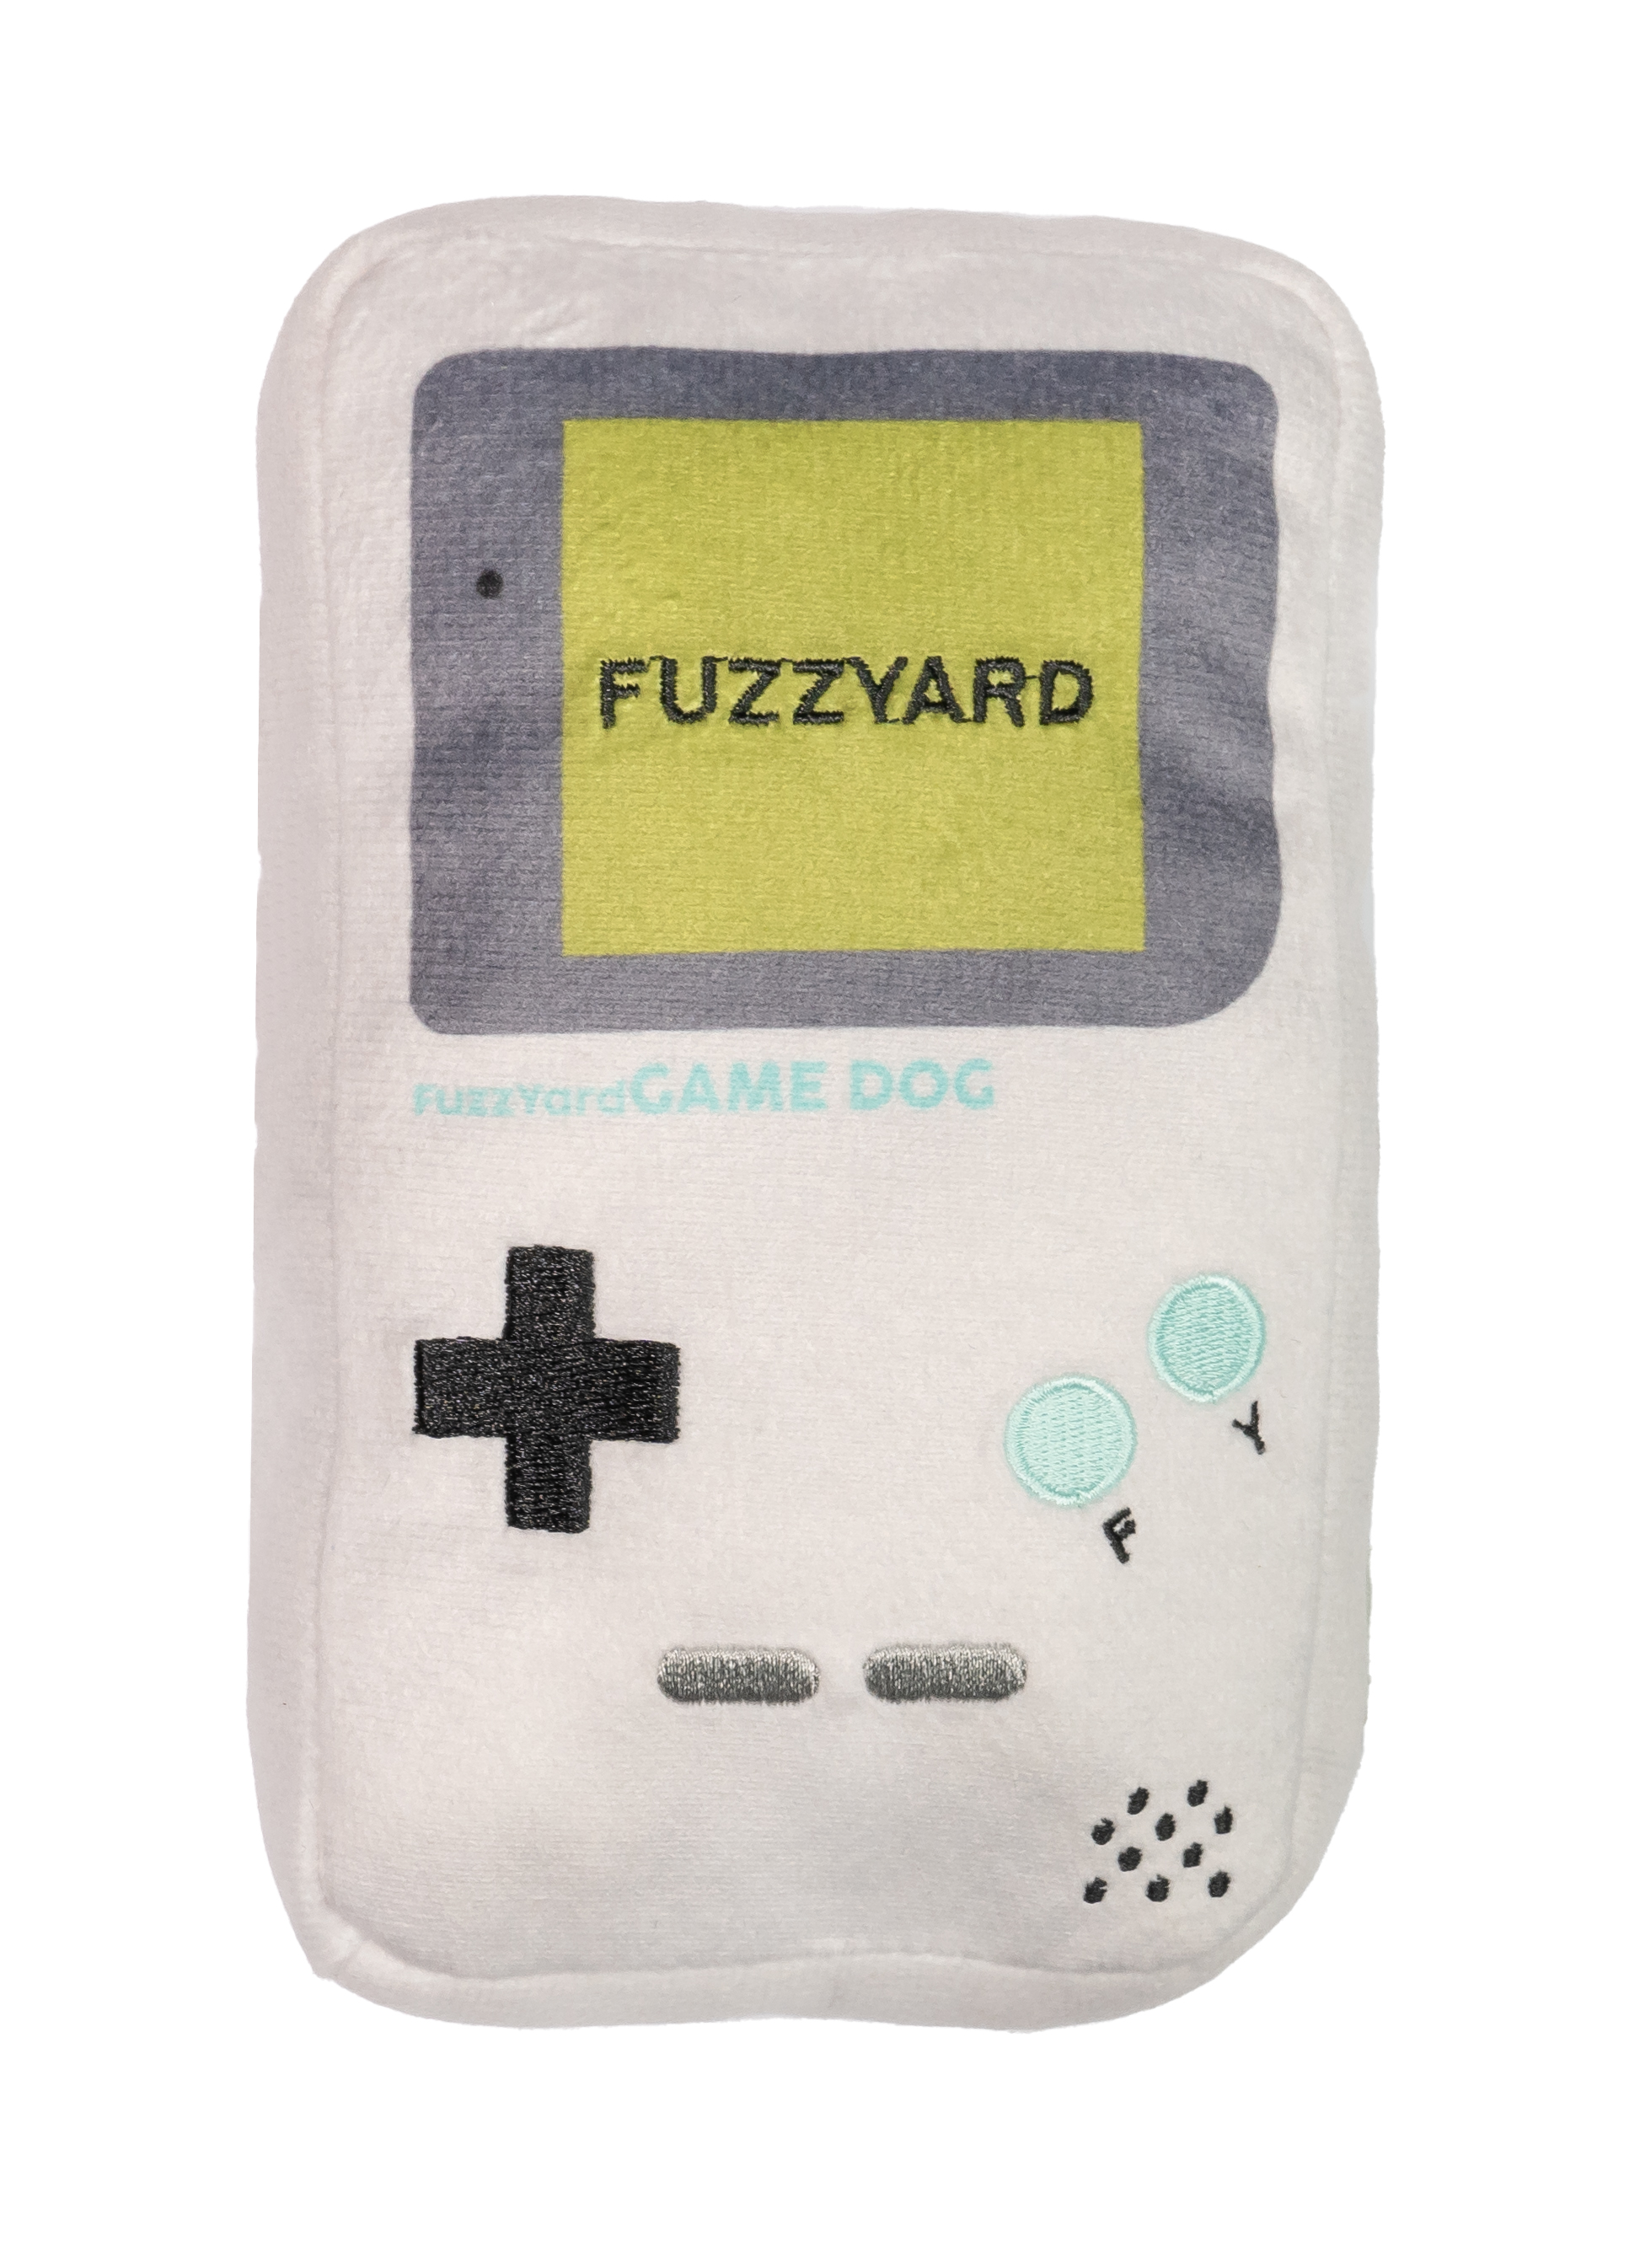 FuzzYard Dog Toy - Retro Plush Toys